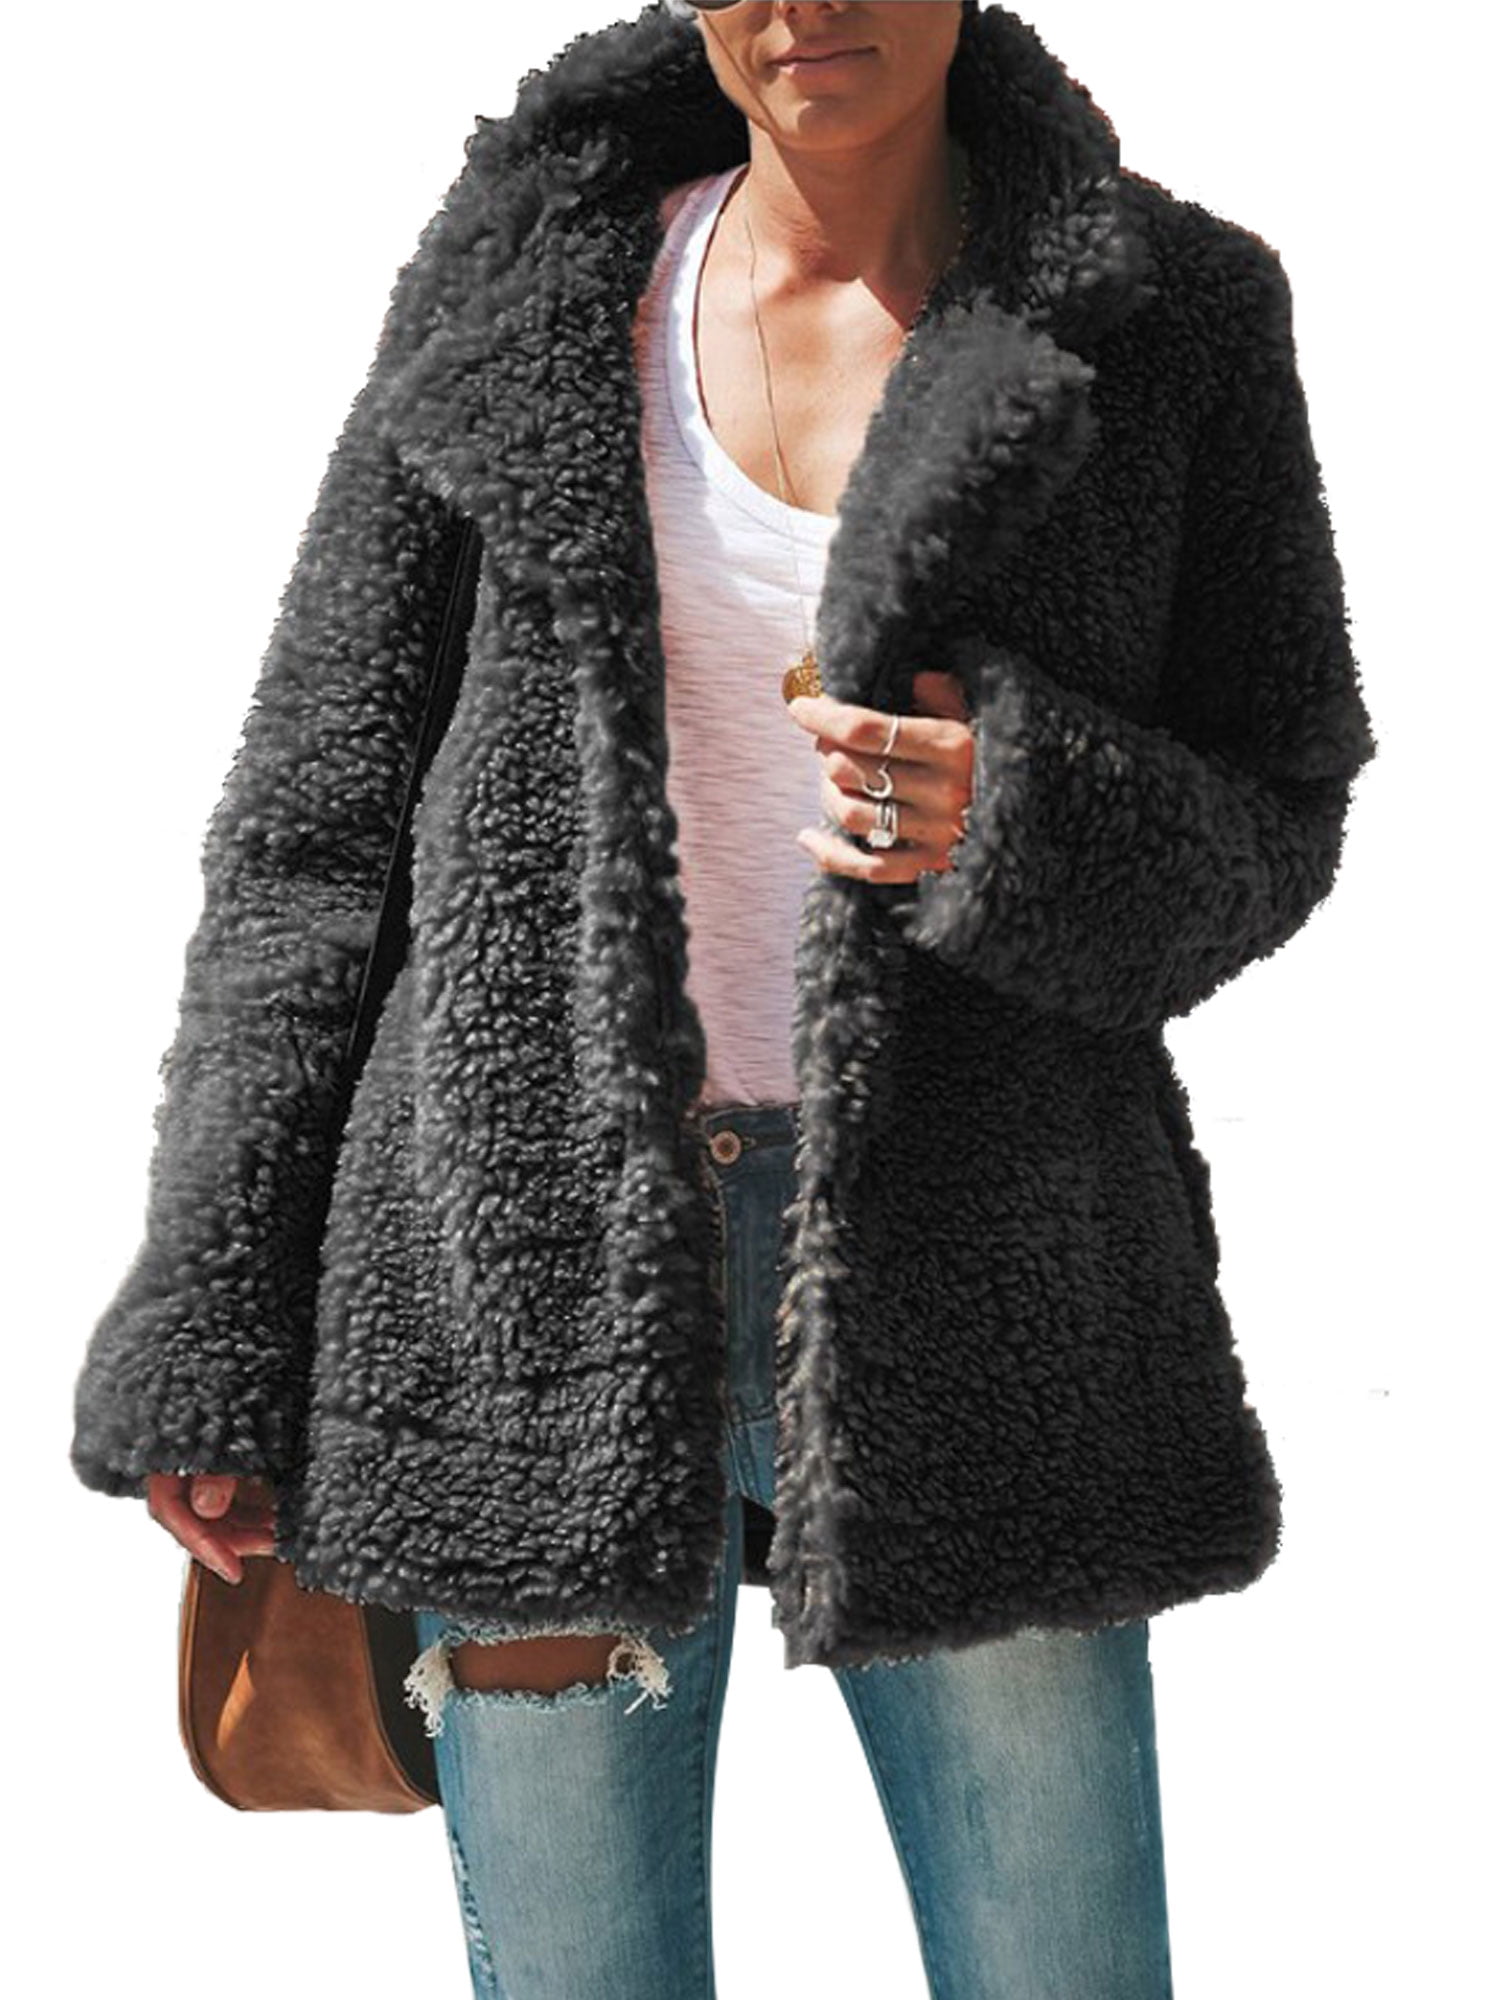 Women Oversize Coat for Winter Fuzzy Fleece Cardigan Faux Fur Outwear Jacket